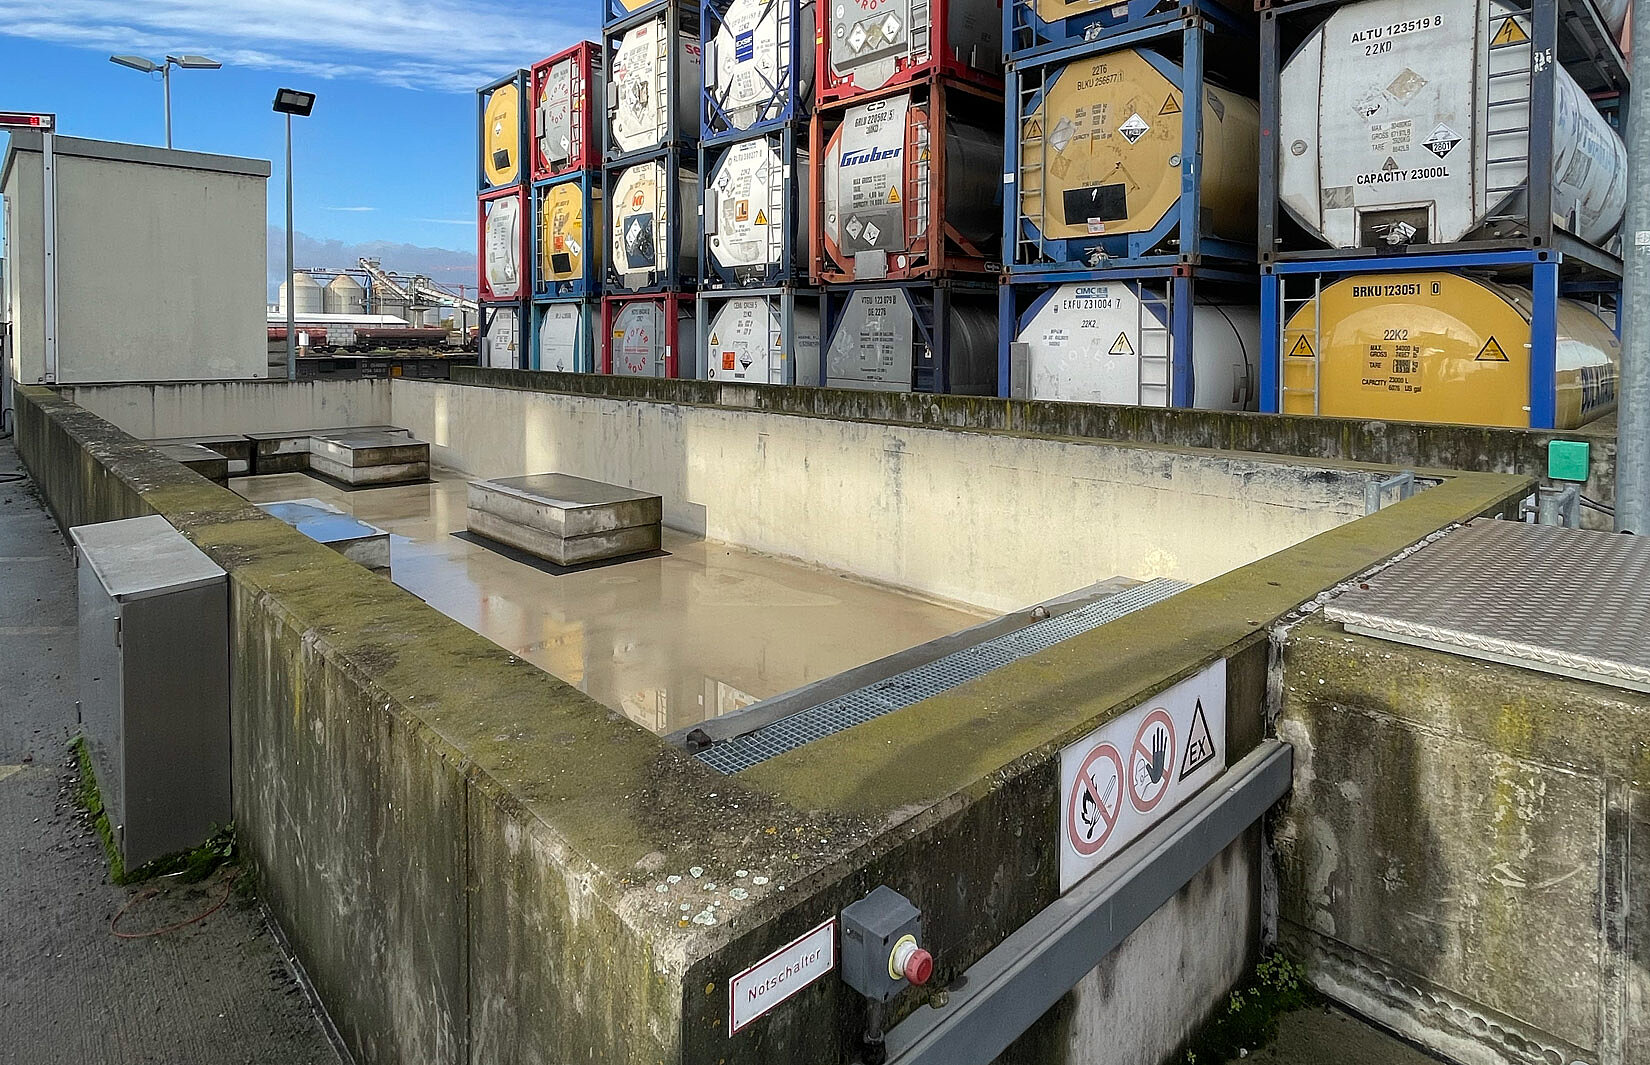 Leeres Gefahgut-Container Becken mit Tankcontainerstapel im Hintergrund